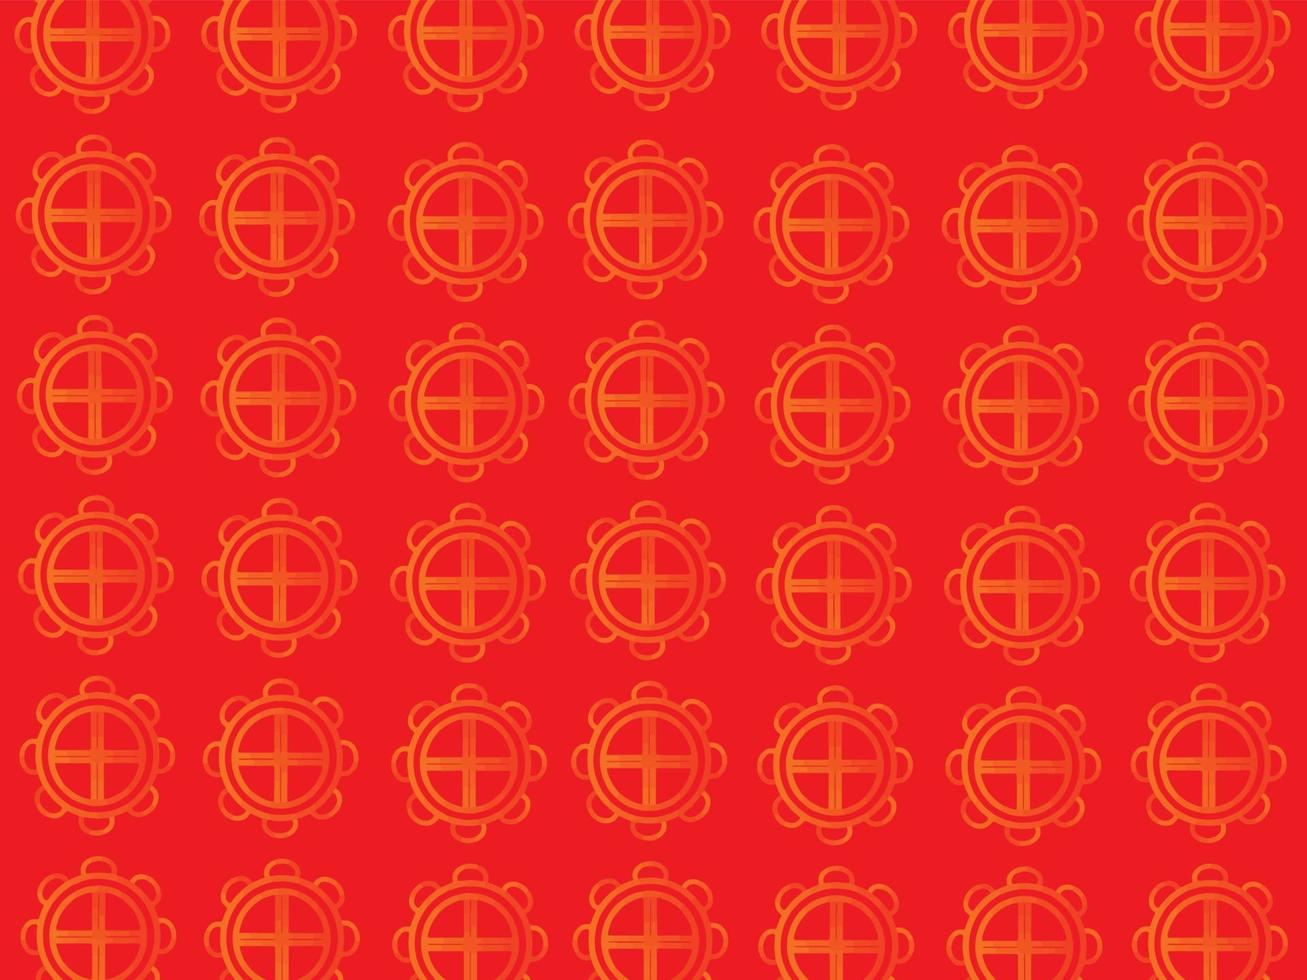 rood roze oranje cirkel gouden geel kleur achtergrond behang leeg patroon abstract creatief grafisch ontwerp banier symbool decoratie ornament gelukkig Chinese nieuw jaar vector illustratie Azië cultuur